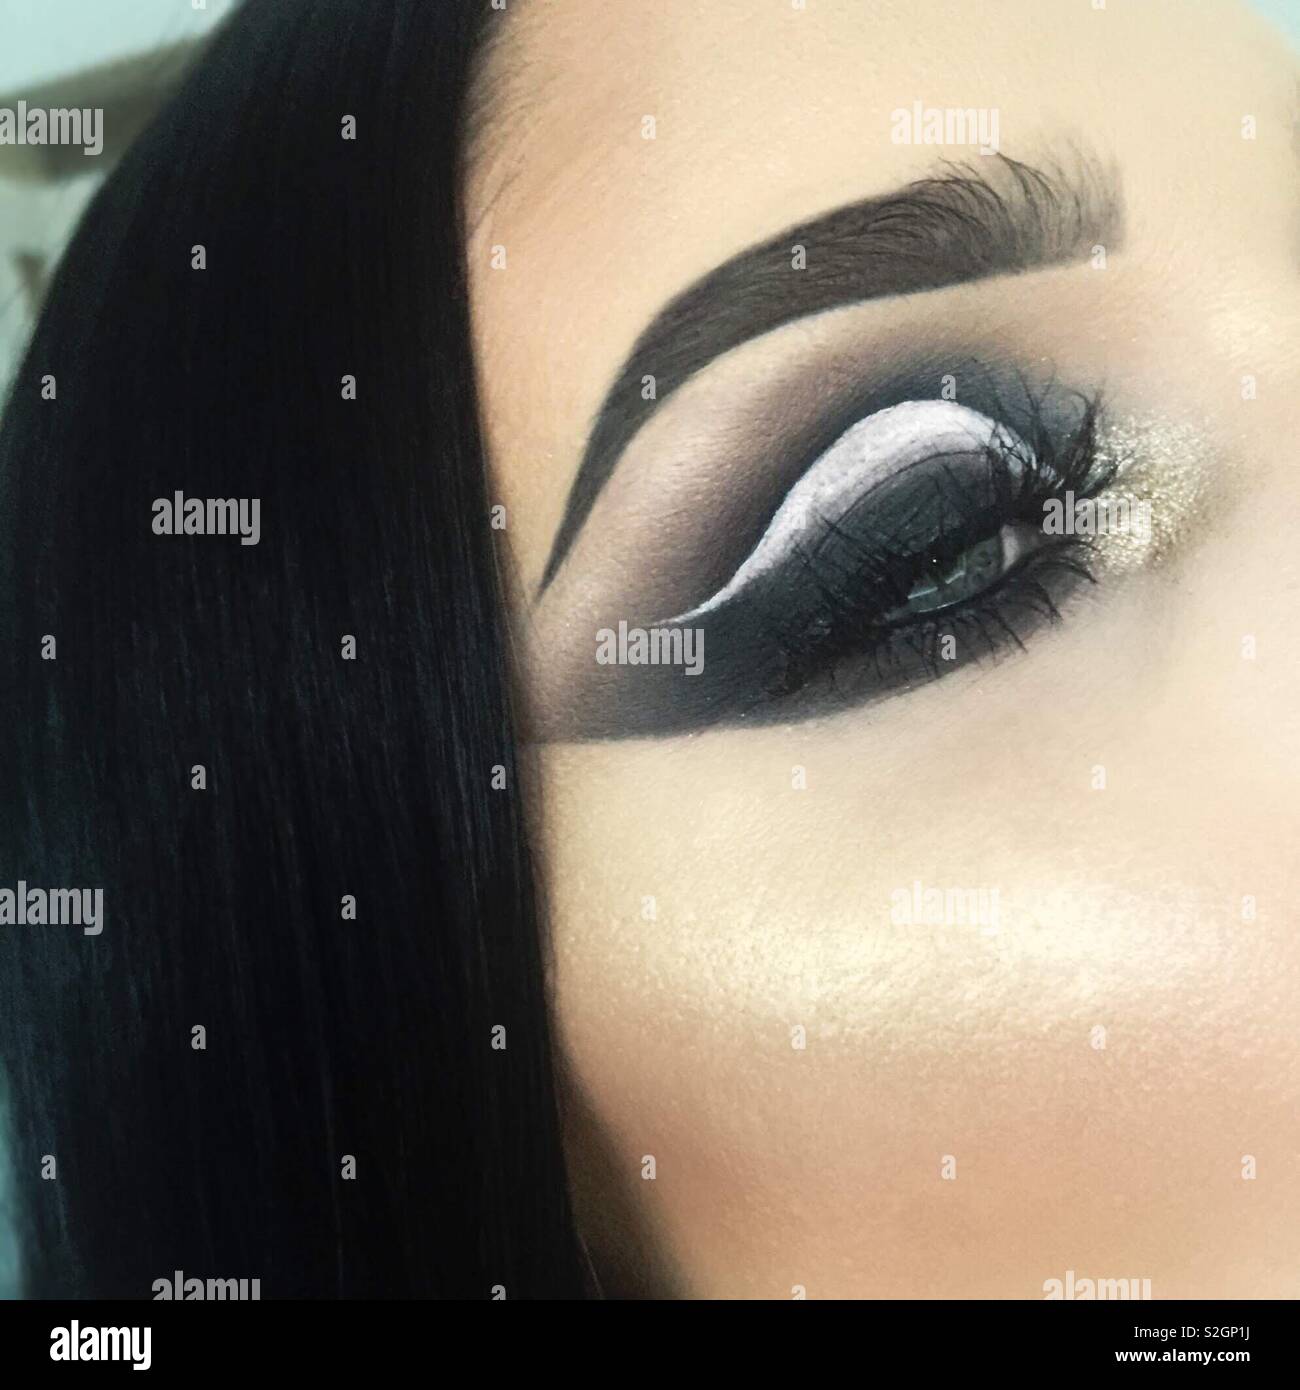 Close up dramatic smokey eye makeup Stock Photo